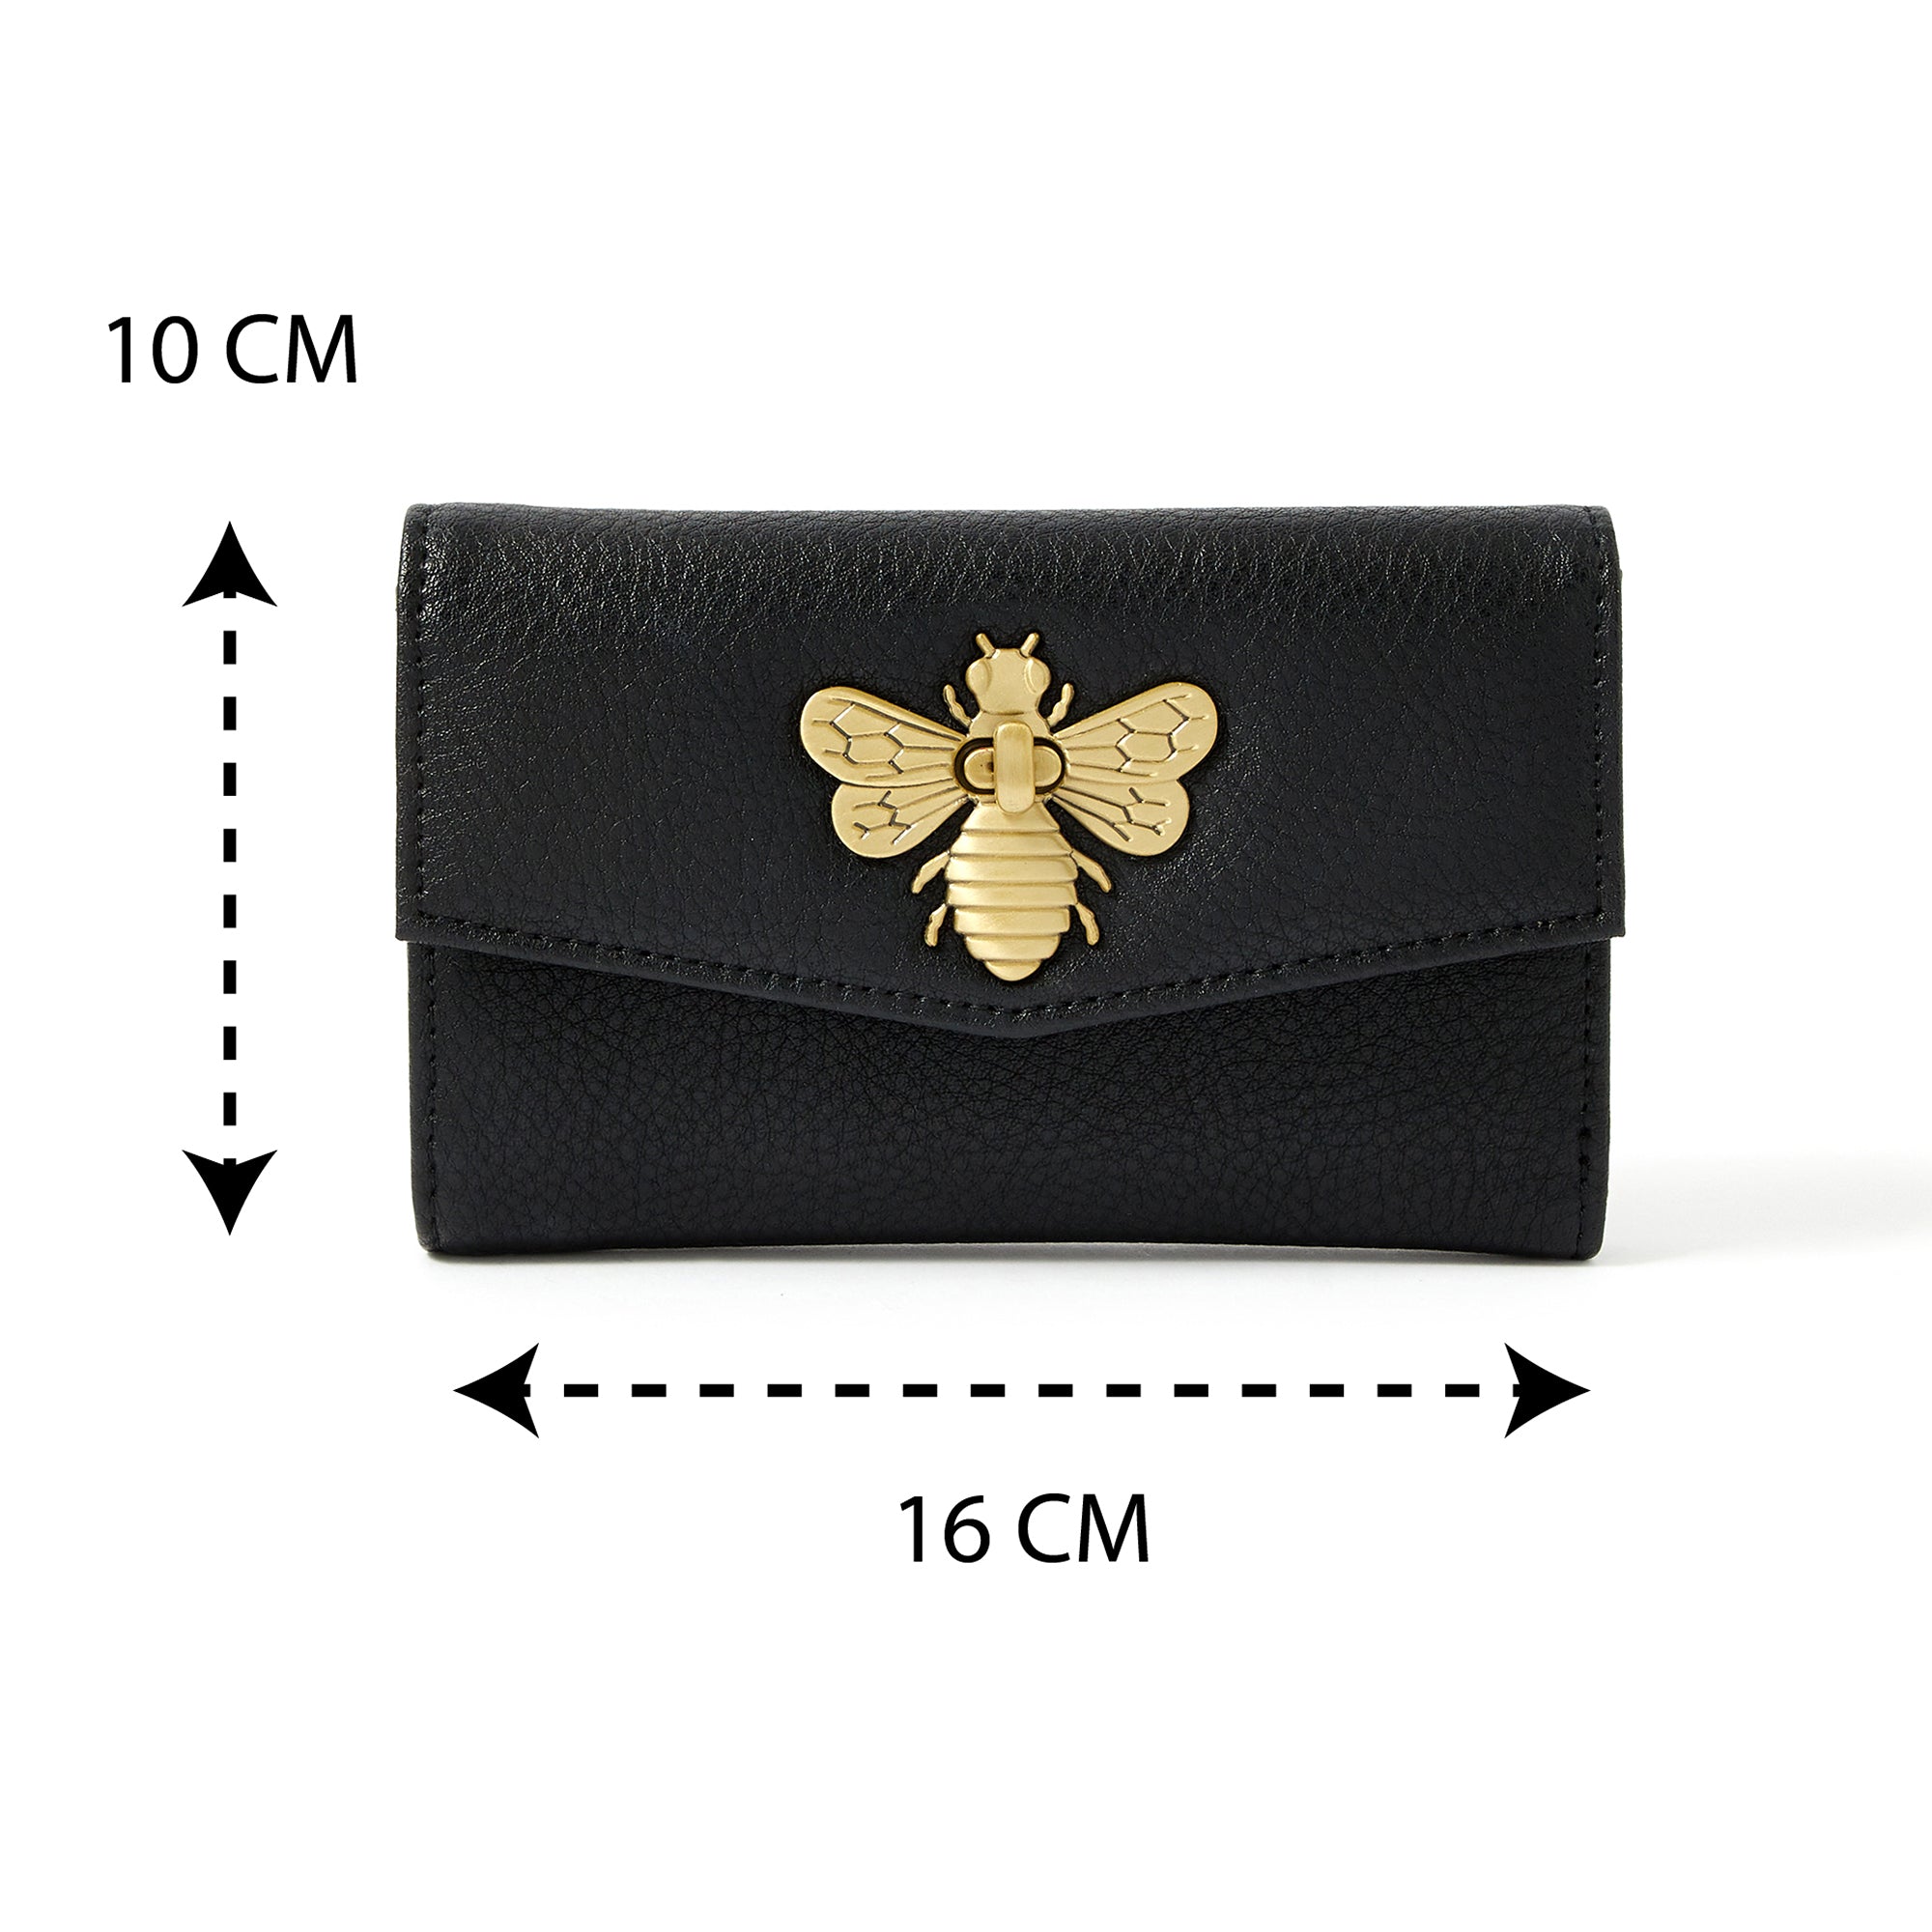 Accessorize London Women's Faux Leather Britney Bee Wallet - Black